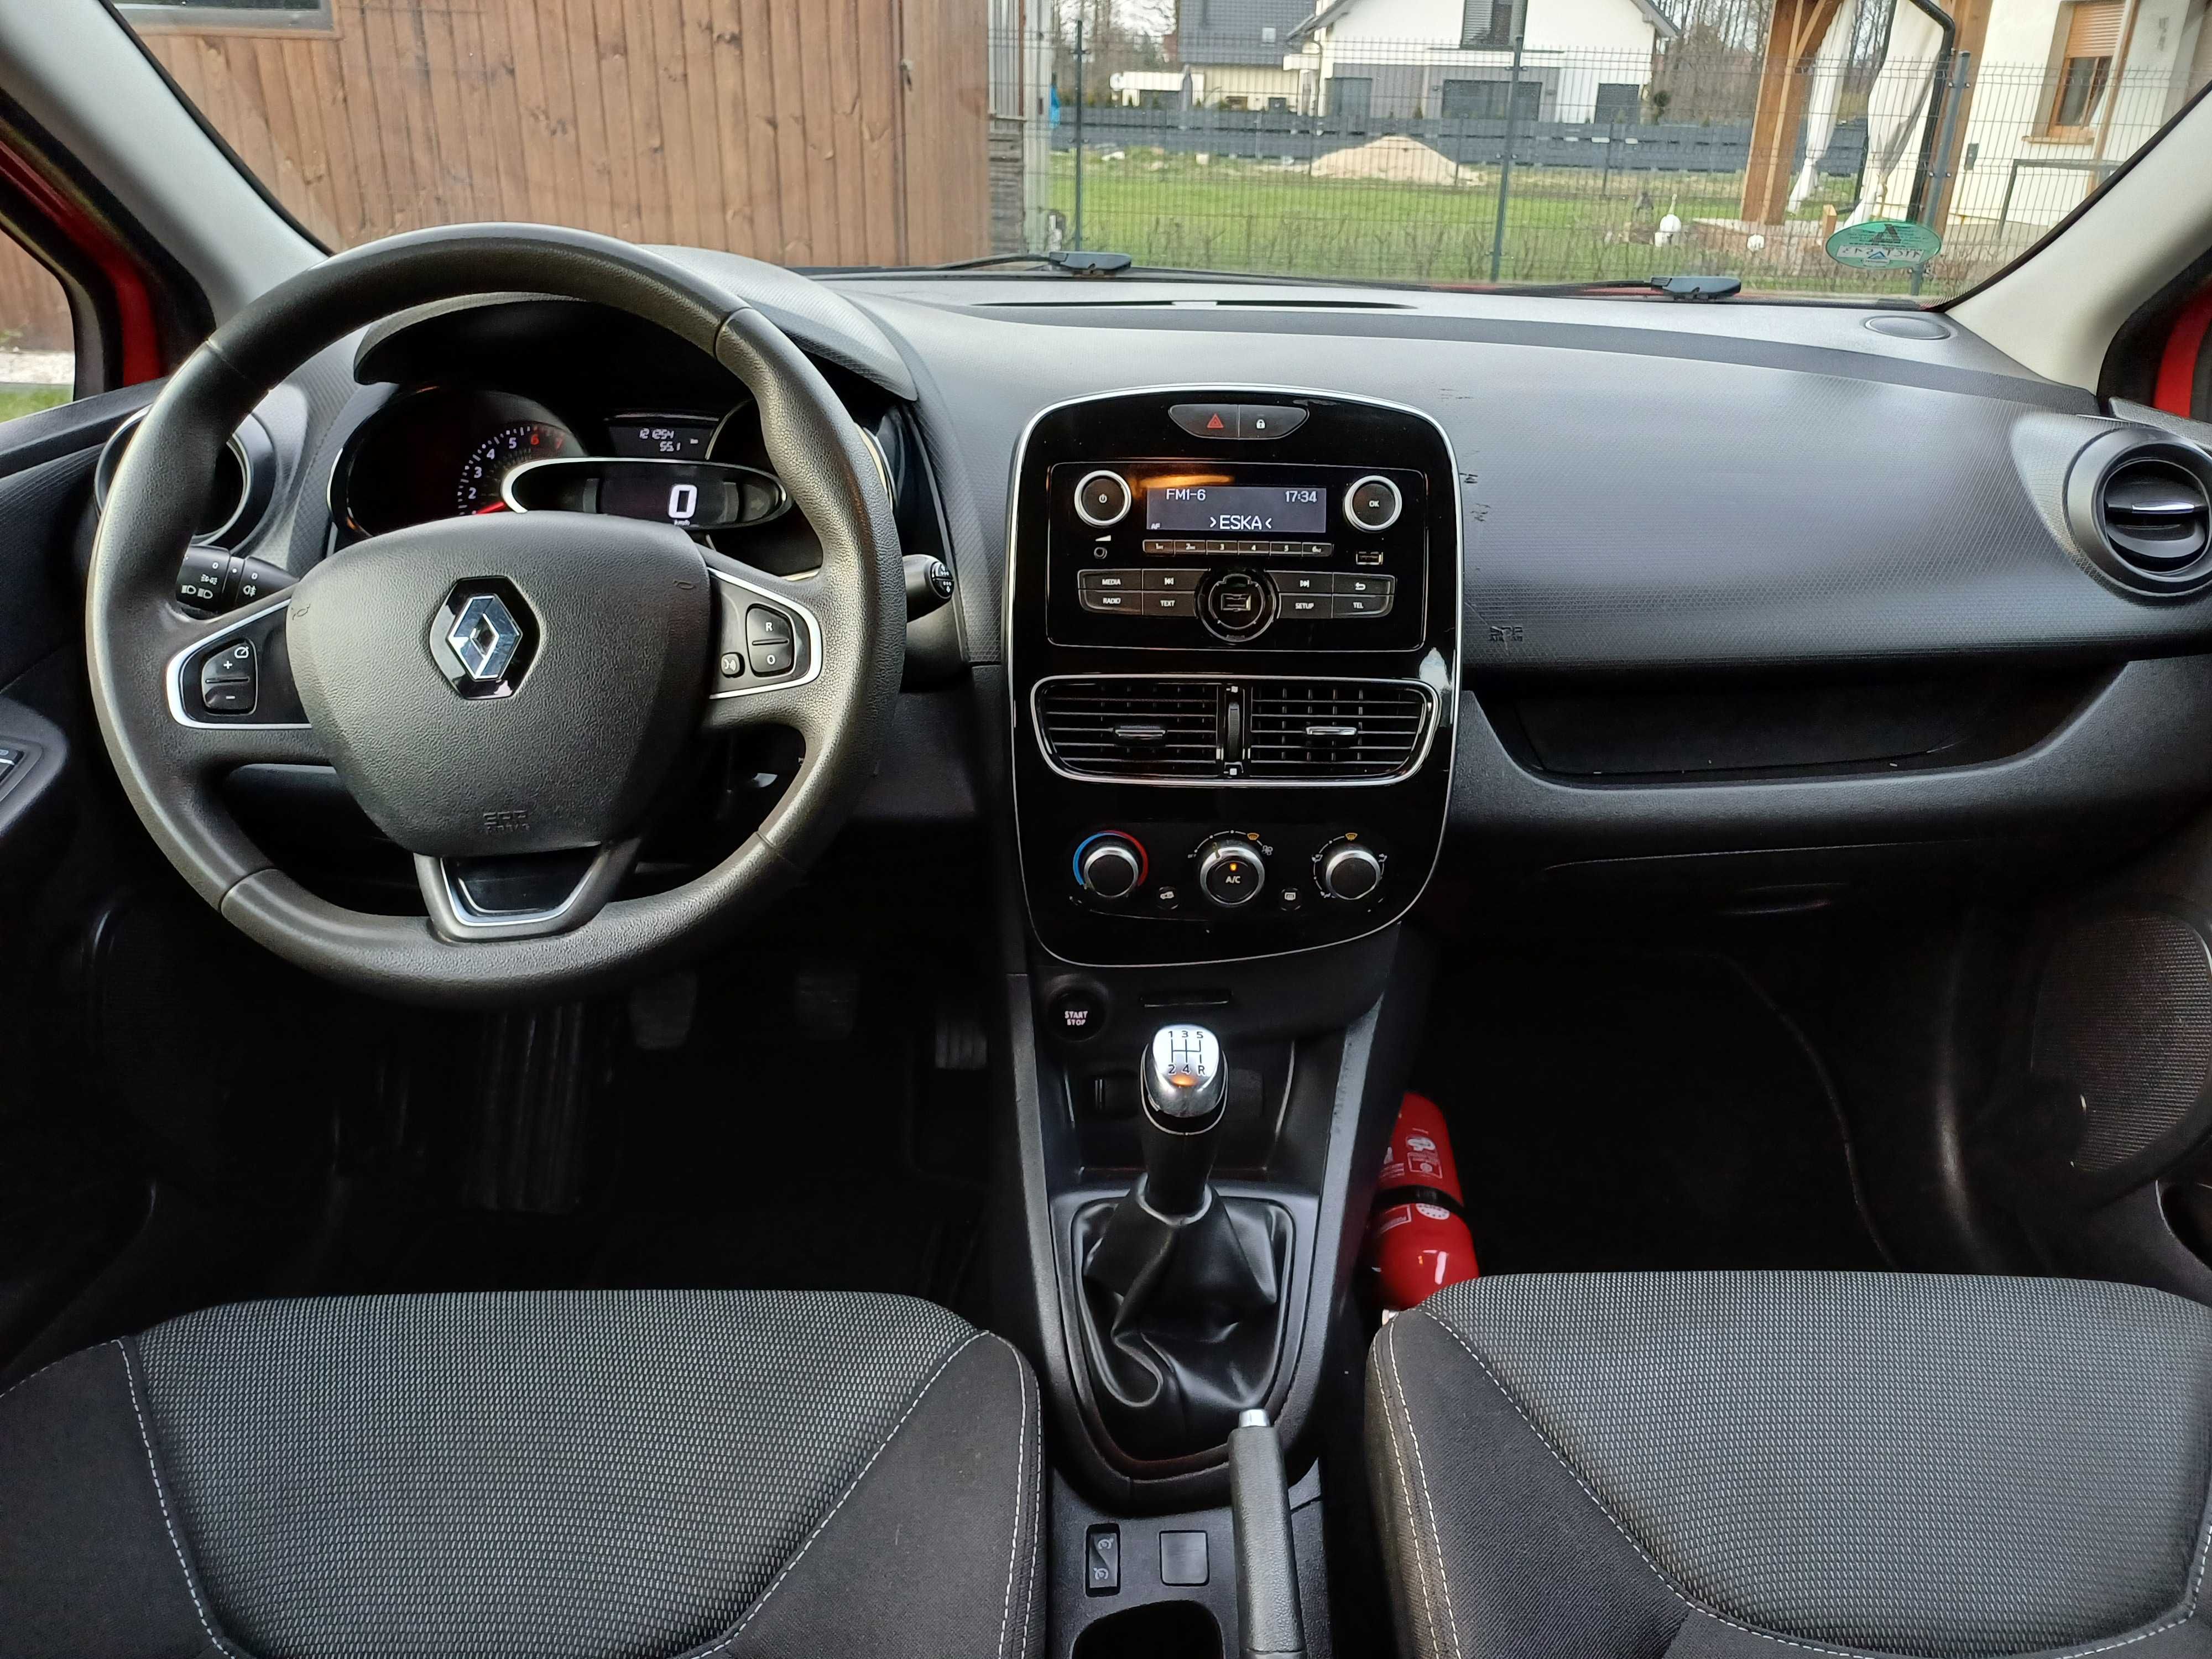 Renault Clio 1.2 16v benzyna, 2017 rok, bezwypadkowy, zarejestrowany